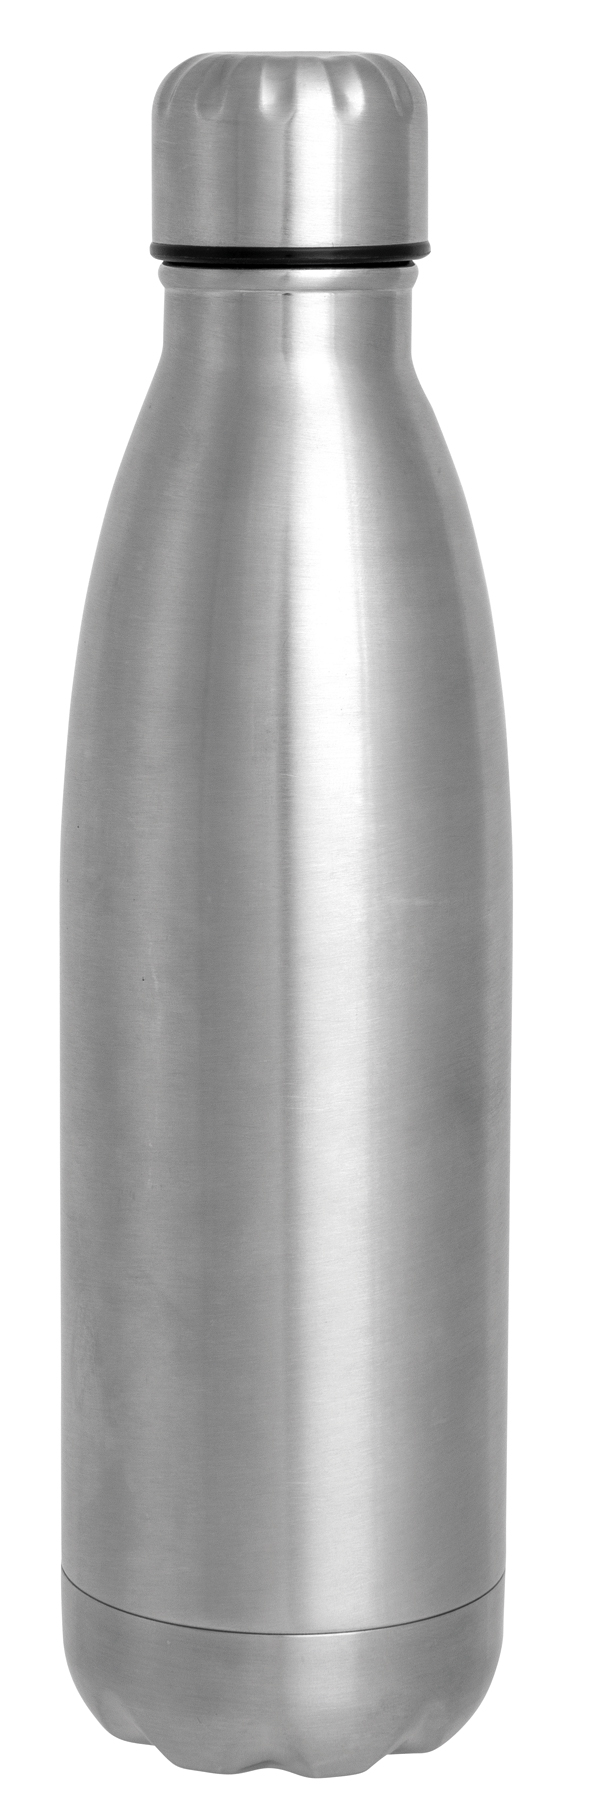 Double-walled vacuum bottle GOLDEN TASTE - silver